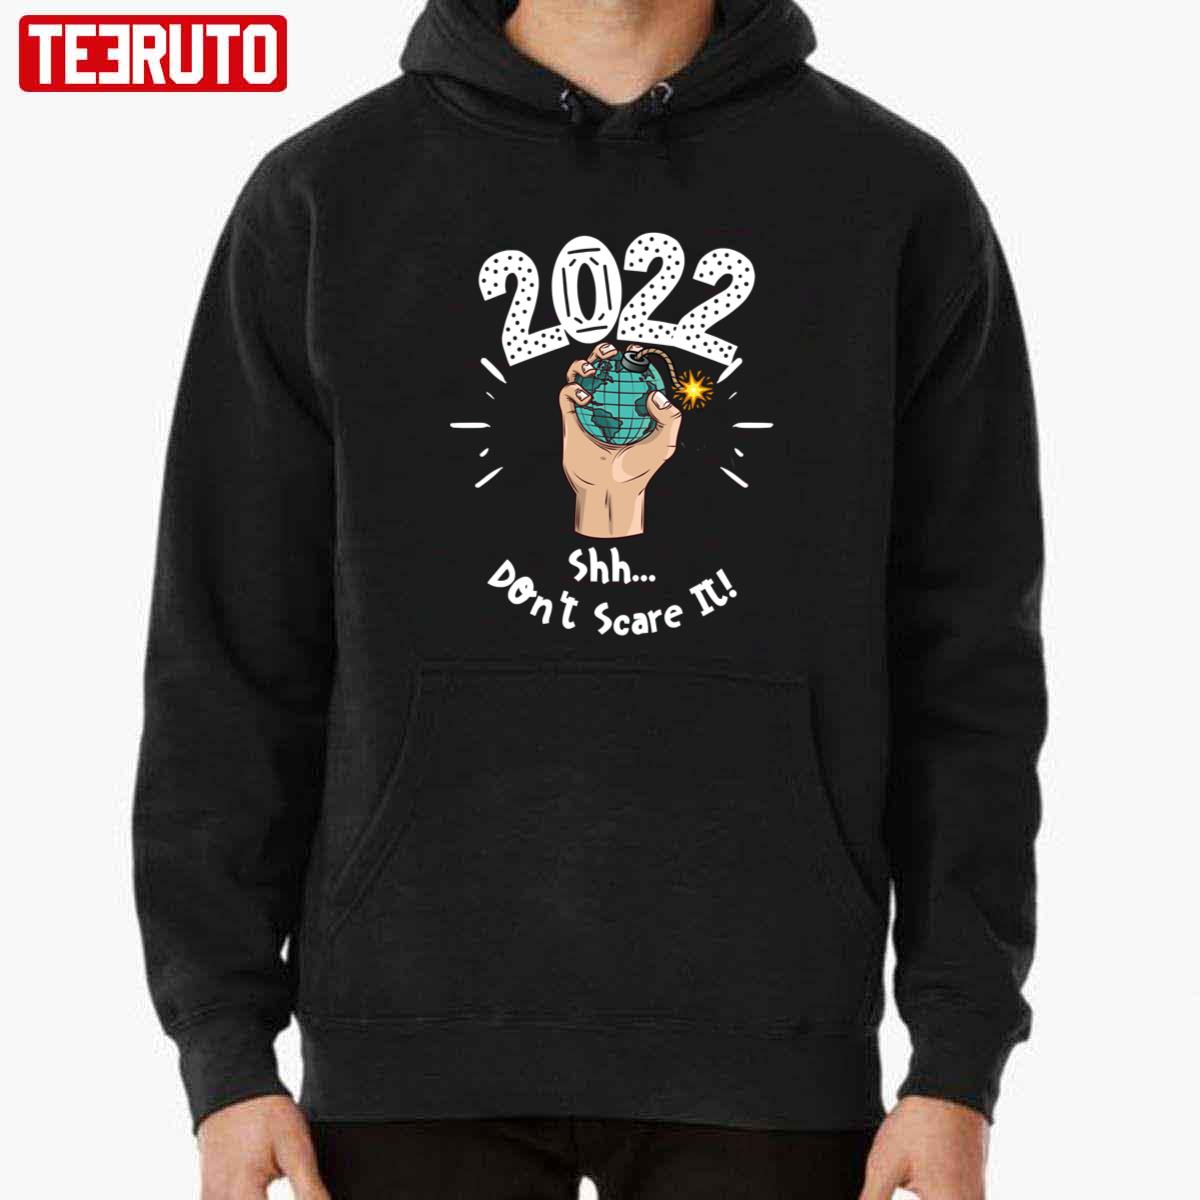 2022 Shh Don't Scare It Unisex T-Shirt